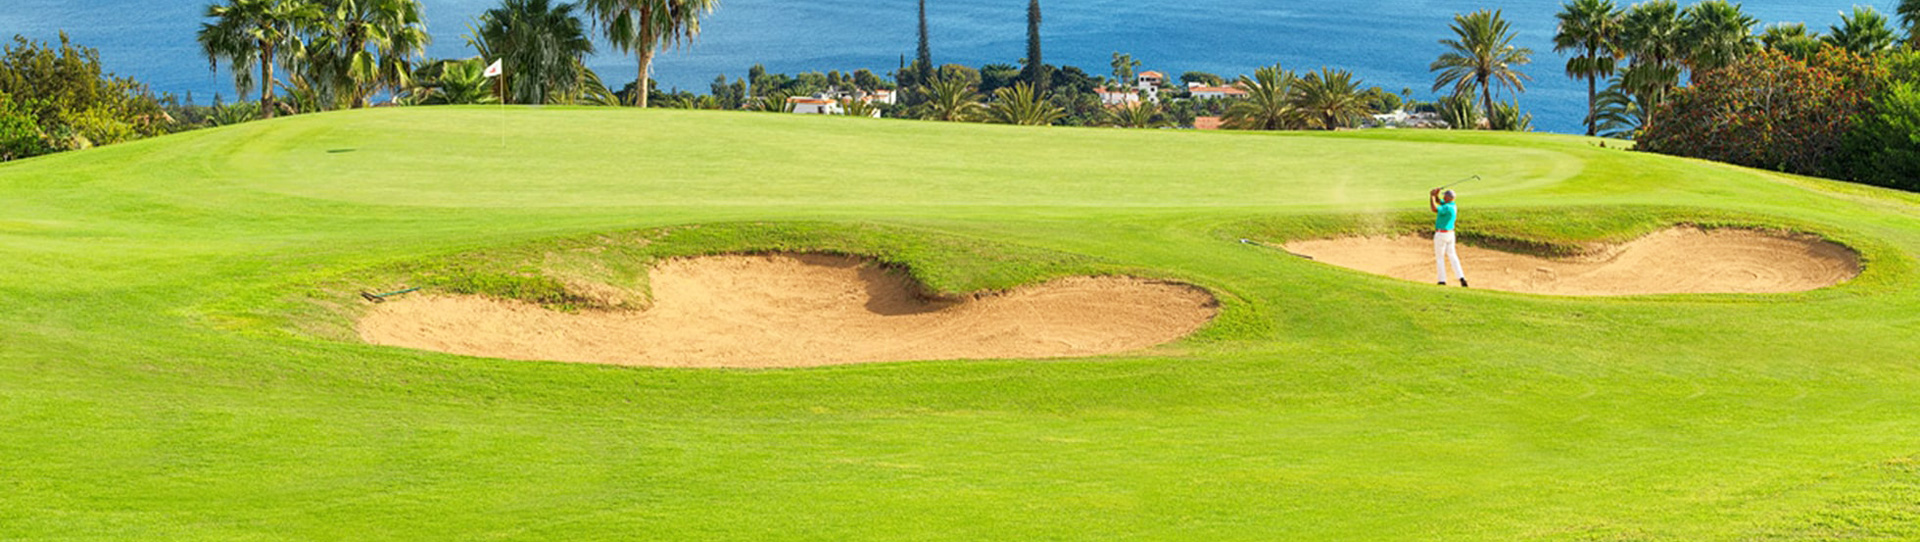 Spain golf courses - Tecina Golf Course - Photo 1